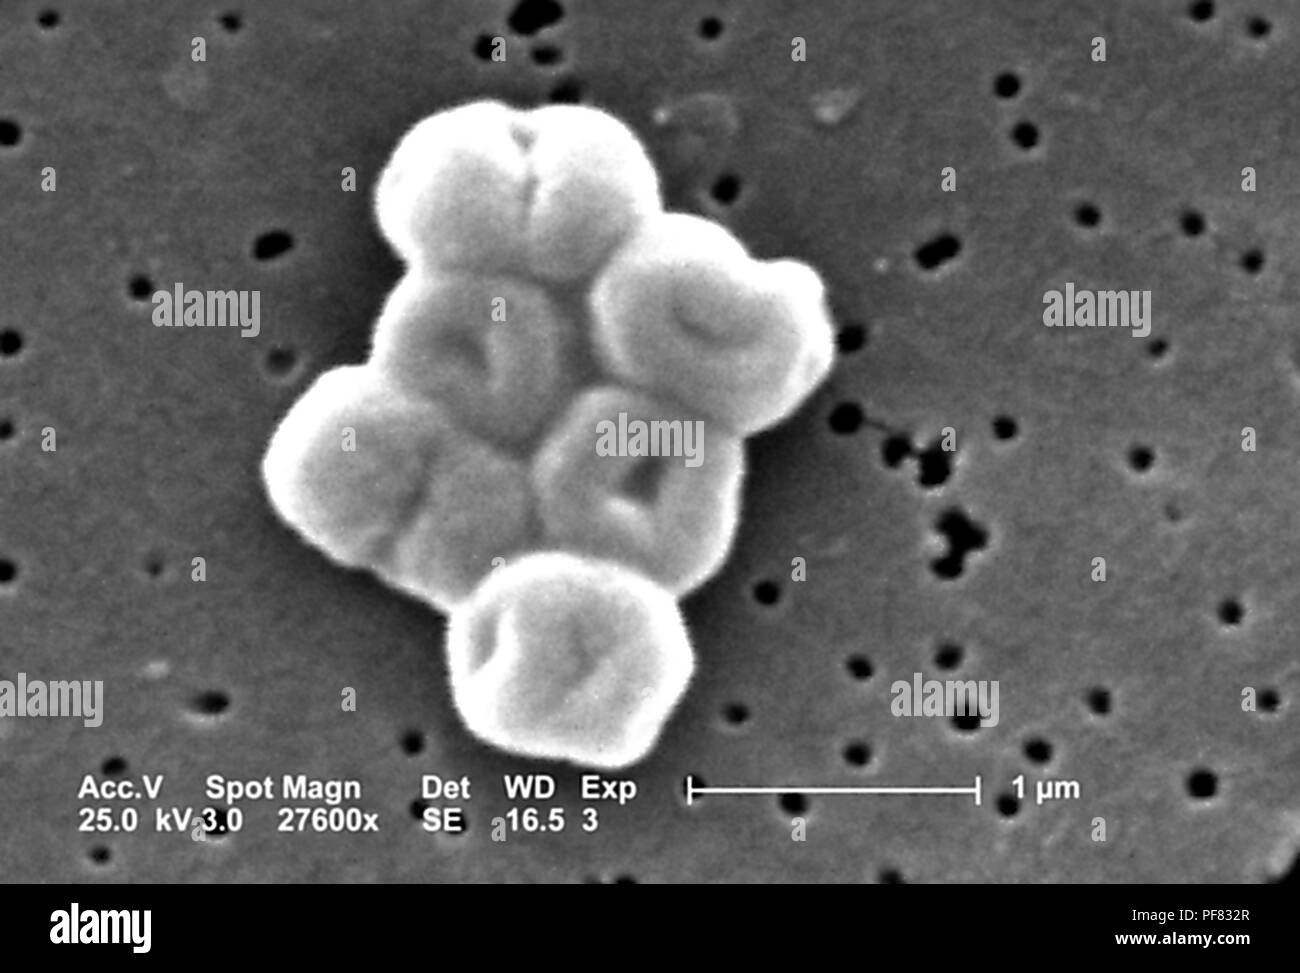 Gram-negativi, non-mobili Acinetobacter baumannii batteri hanno rivelato  nel 27600x scansione ingrandita al microscopio elettronico (SEM) immagine,  2004. Immagine cortesia di centri per il controllo delle malattie (CDC) /  Matteo J. Arduino, DrPH,